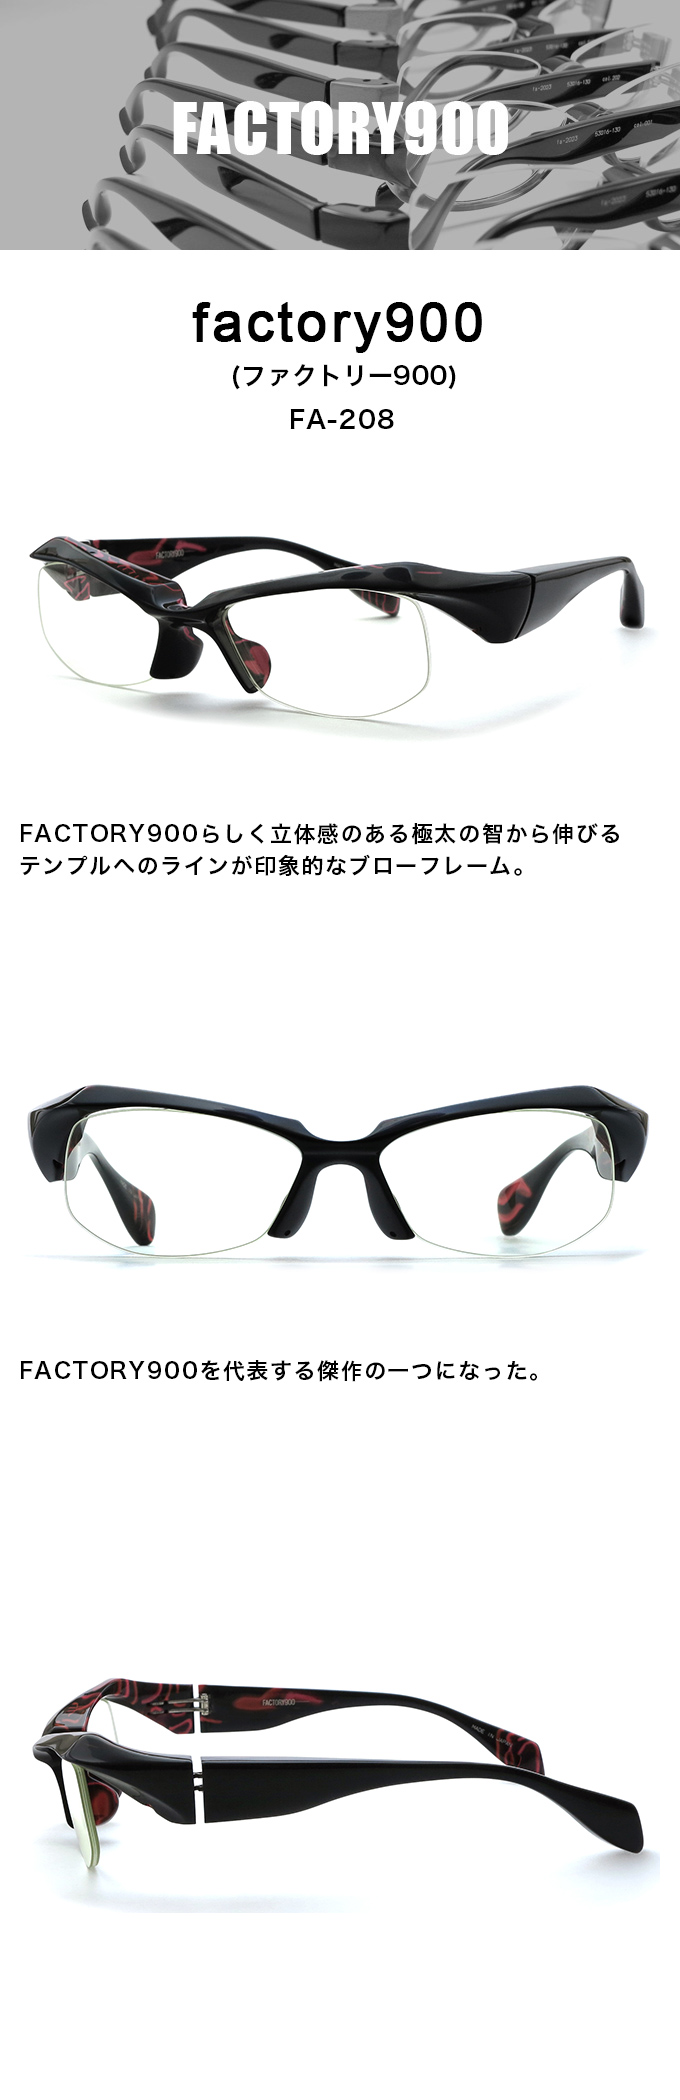 factory900（ファクトリー900）fa-208 54mm 5カラー 029(黒) 182（クリア茶） 376(オレンジ) 491(ネイビー)  575(カーキ)メンズ メガネ 眼鏡 サングラス【店頭受取対応商品】